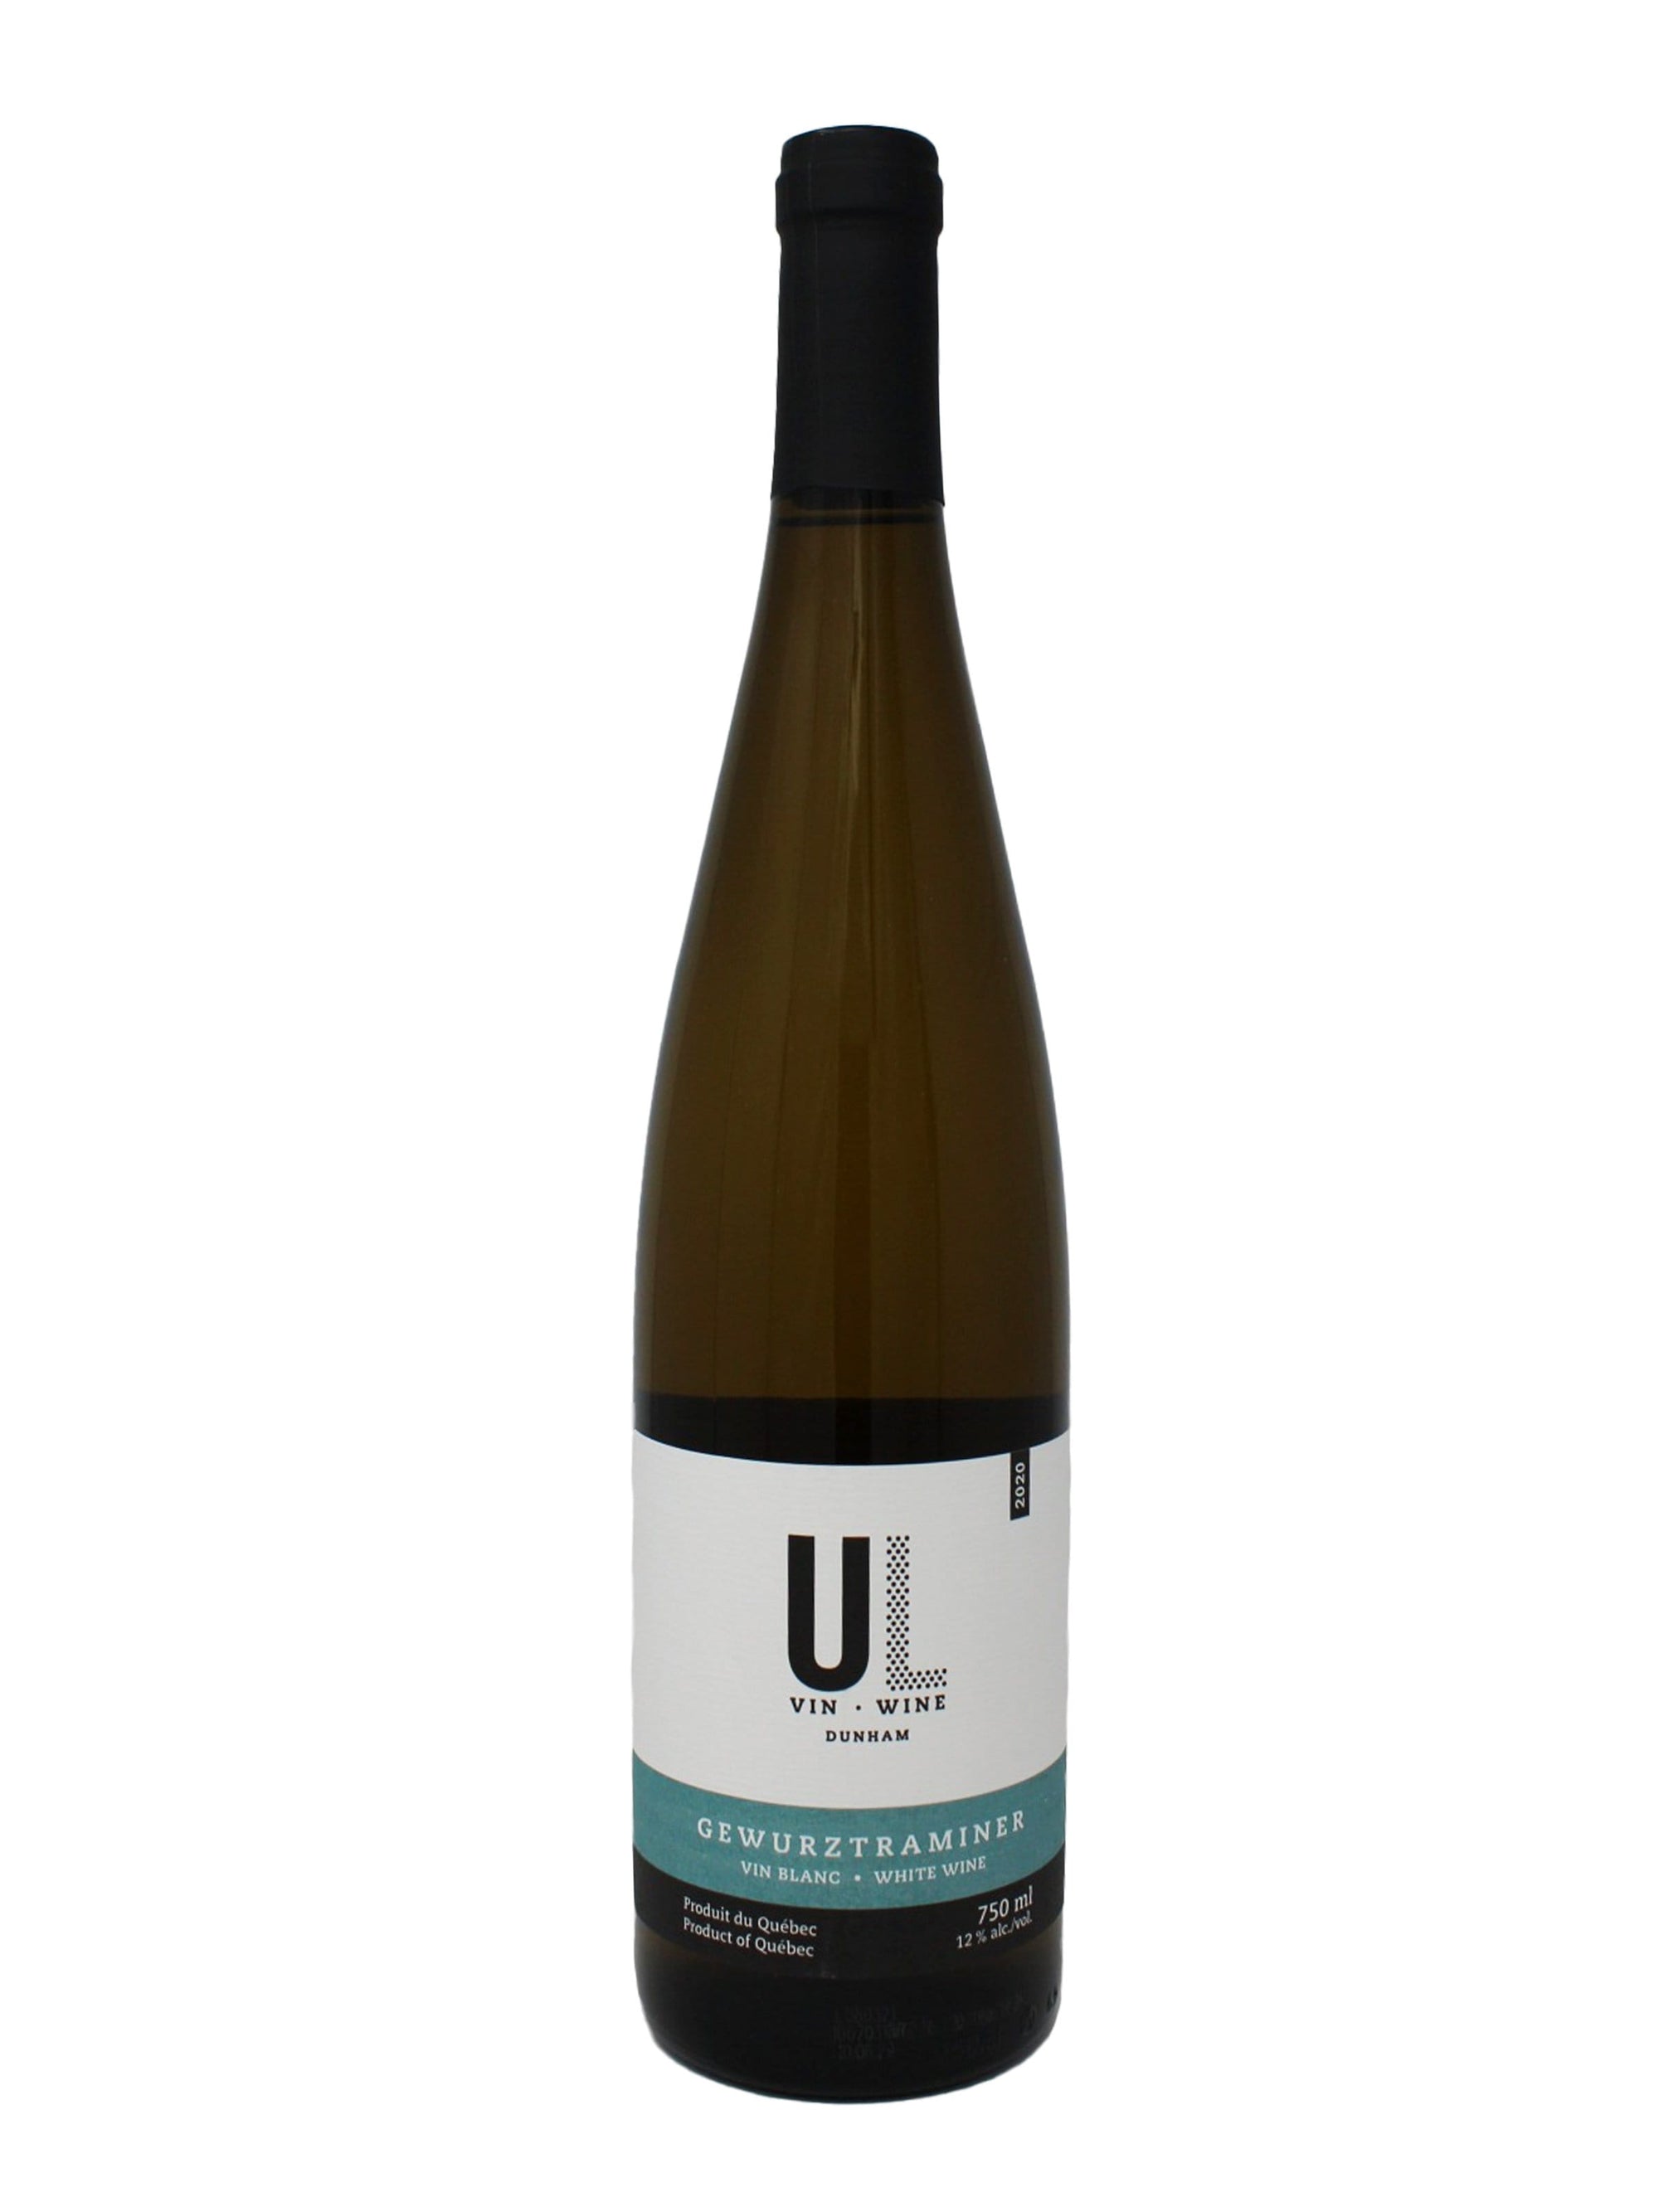 Union Libre vin Gewurztraminer - Vin blanc de chez Union Libre